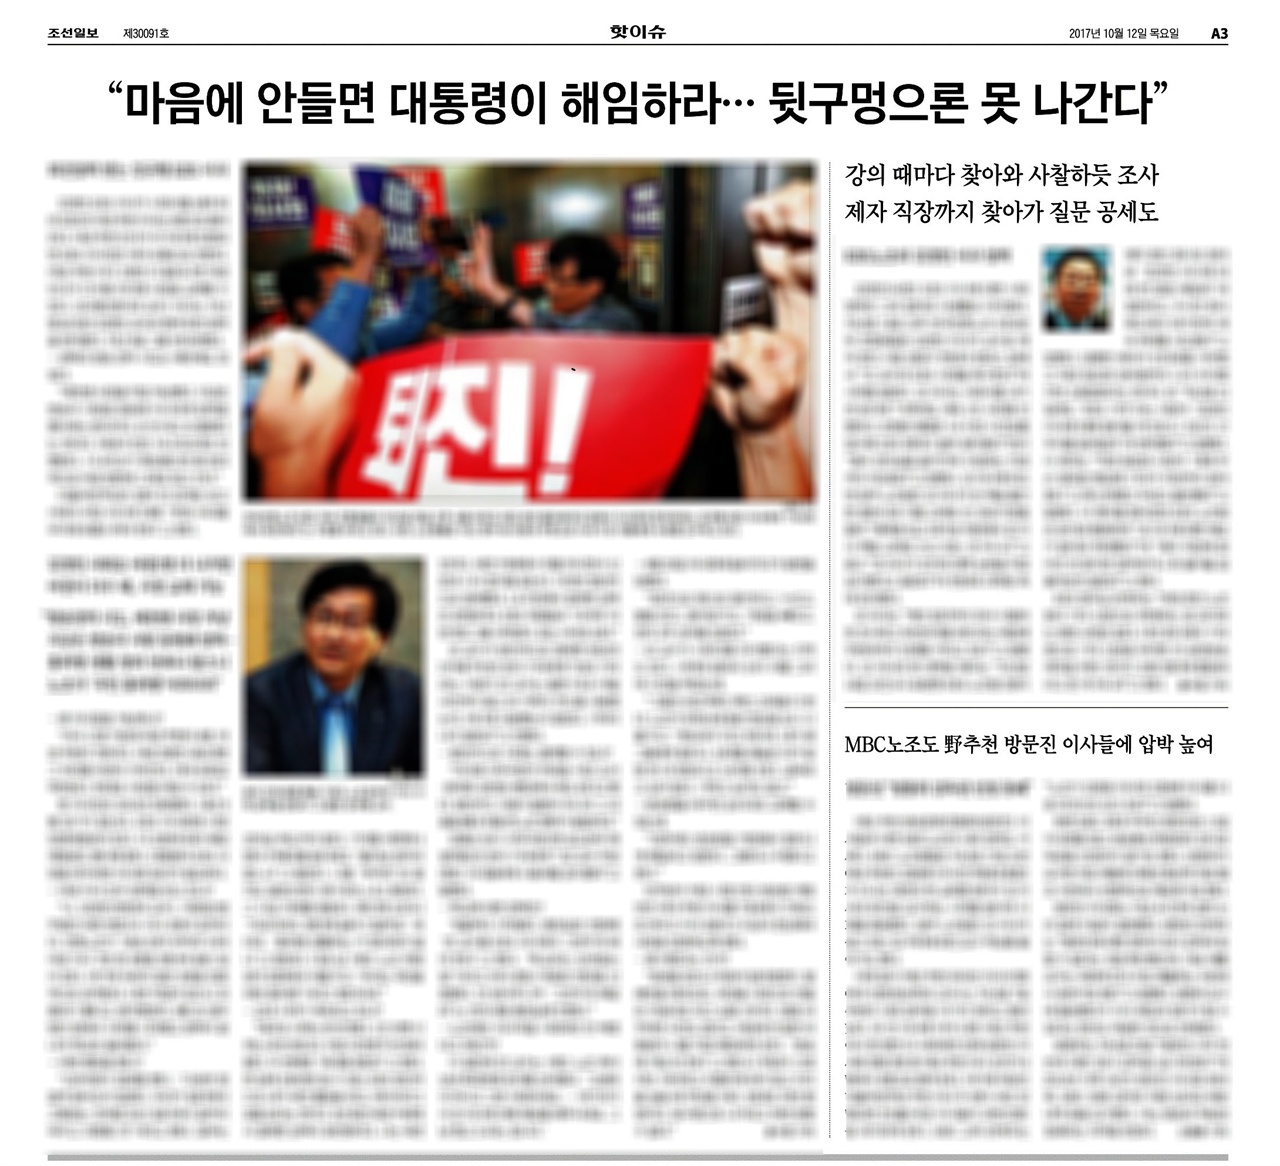 
△ 3면 전체를 할애해 KBS 이사 사퇴를 보도한 조선일보 (10/12)